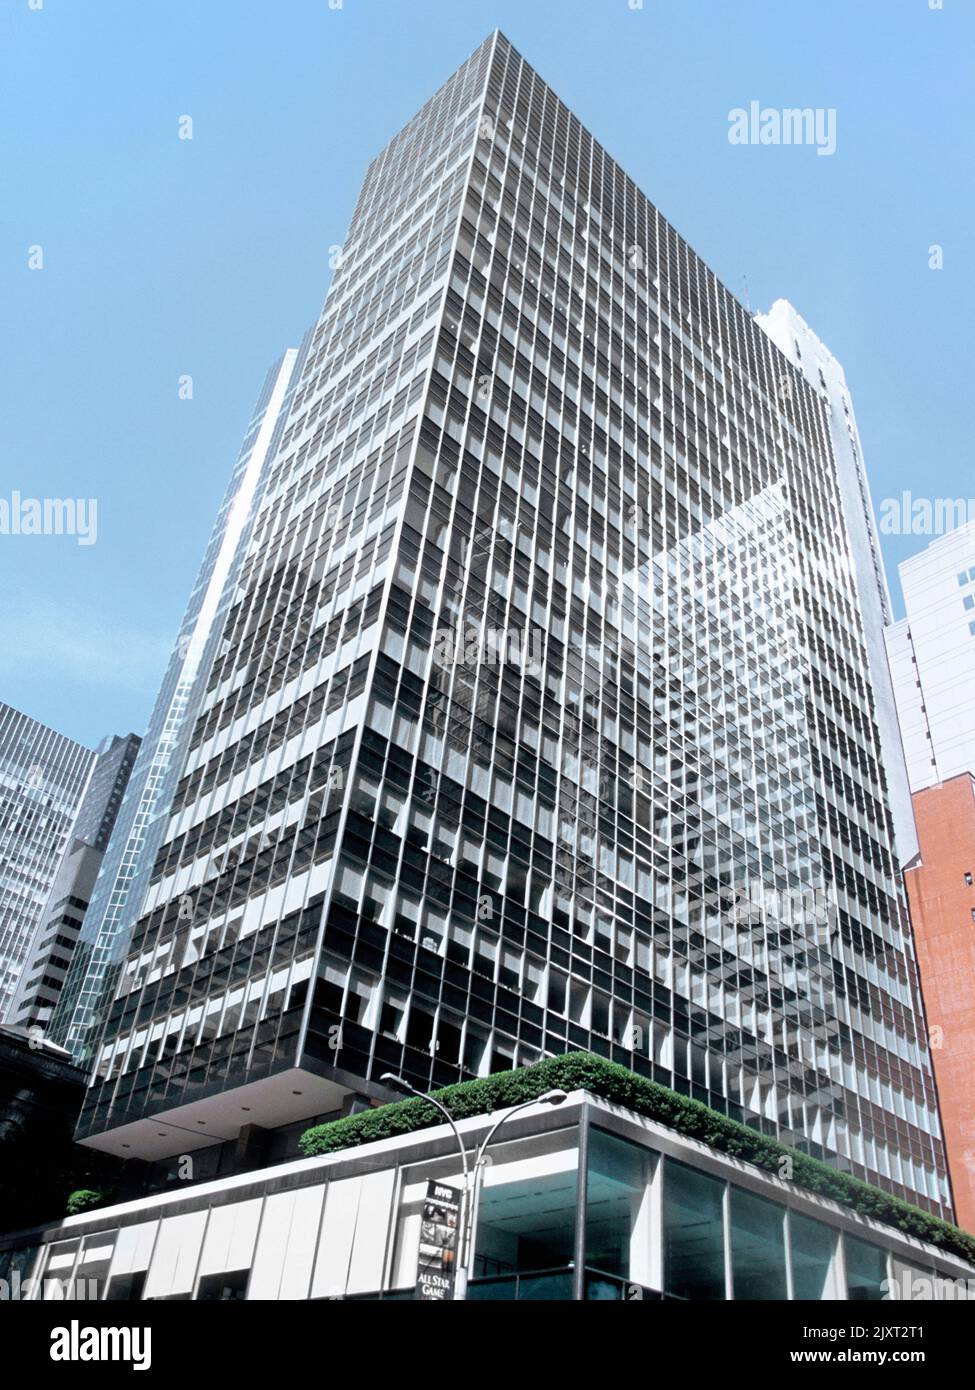 Façade de gratte-ciel de la maison de levier. New York City Park Avenue. Boîtier en verre à architecture futuriste style international, Banque D'Images